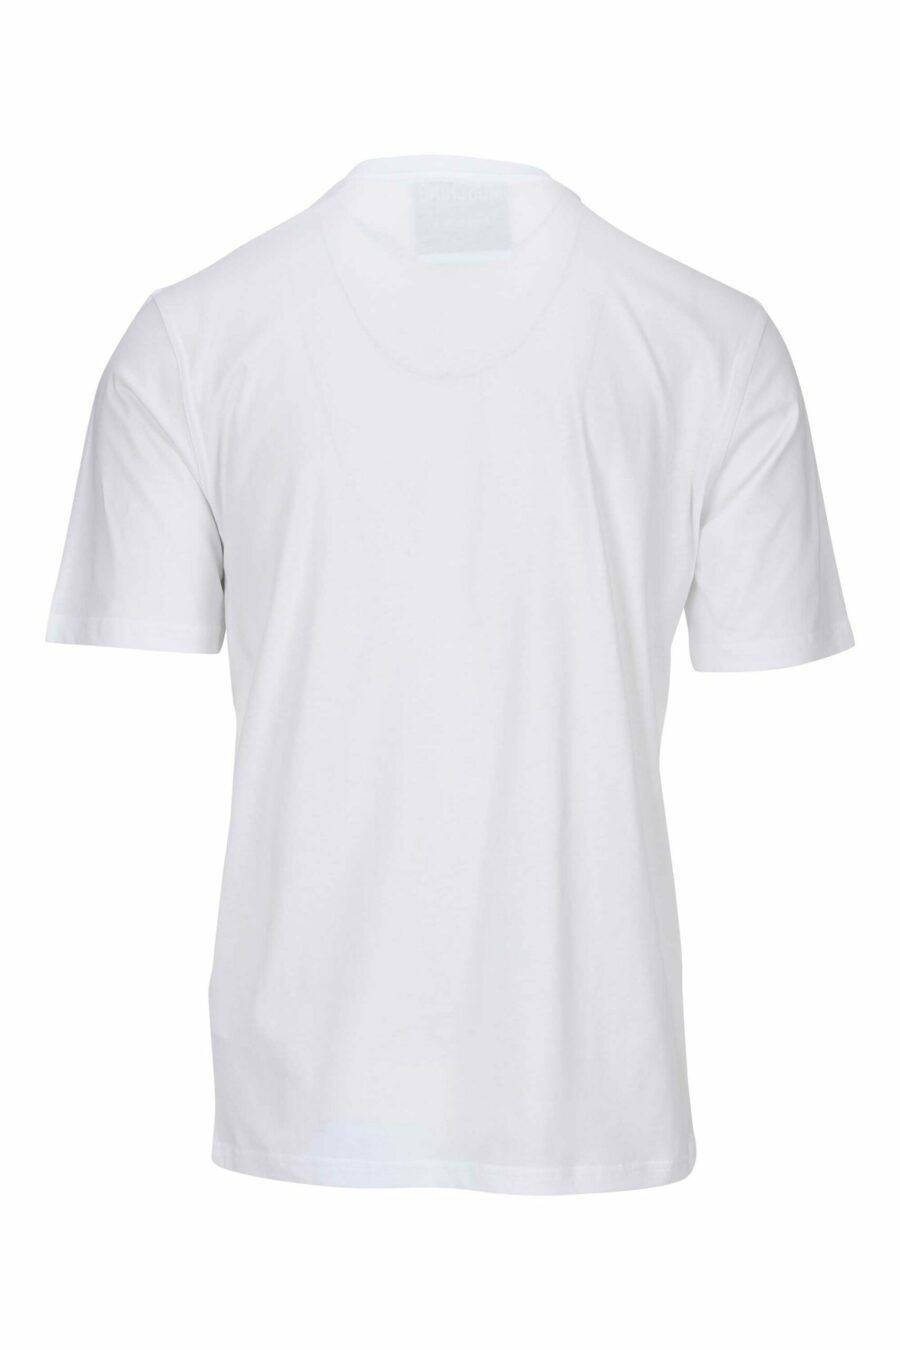 T-shirt blanc en coton biologique "100% pure moschino" - 667113764948 1 échelle